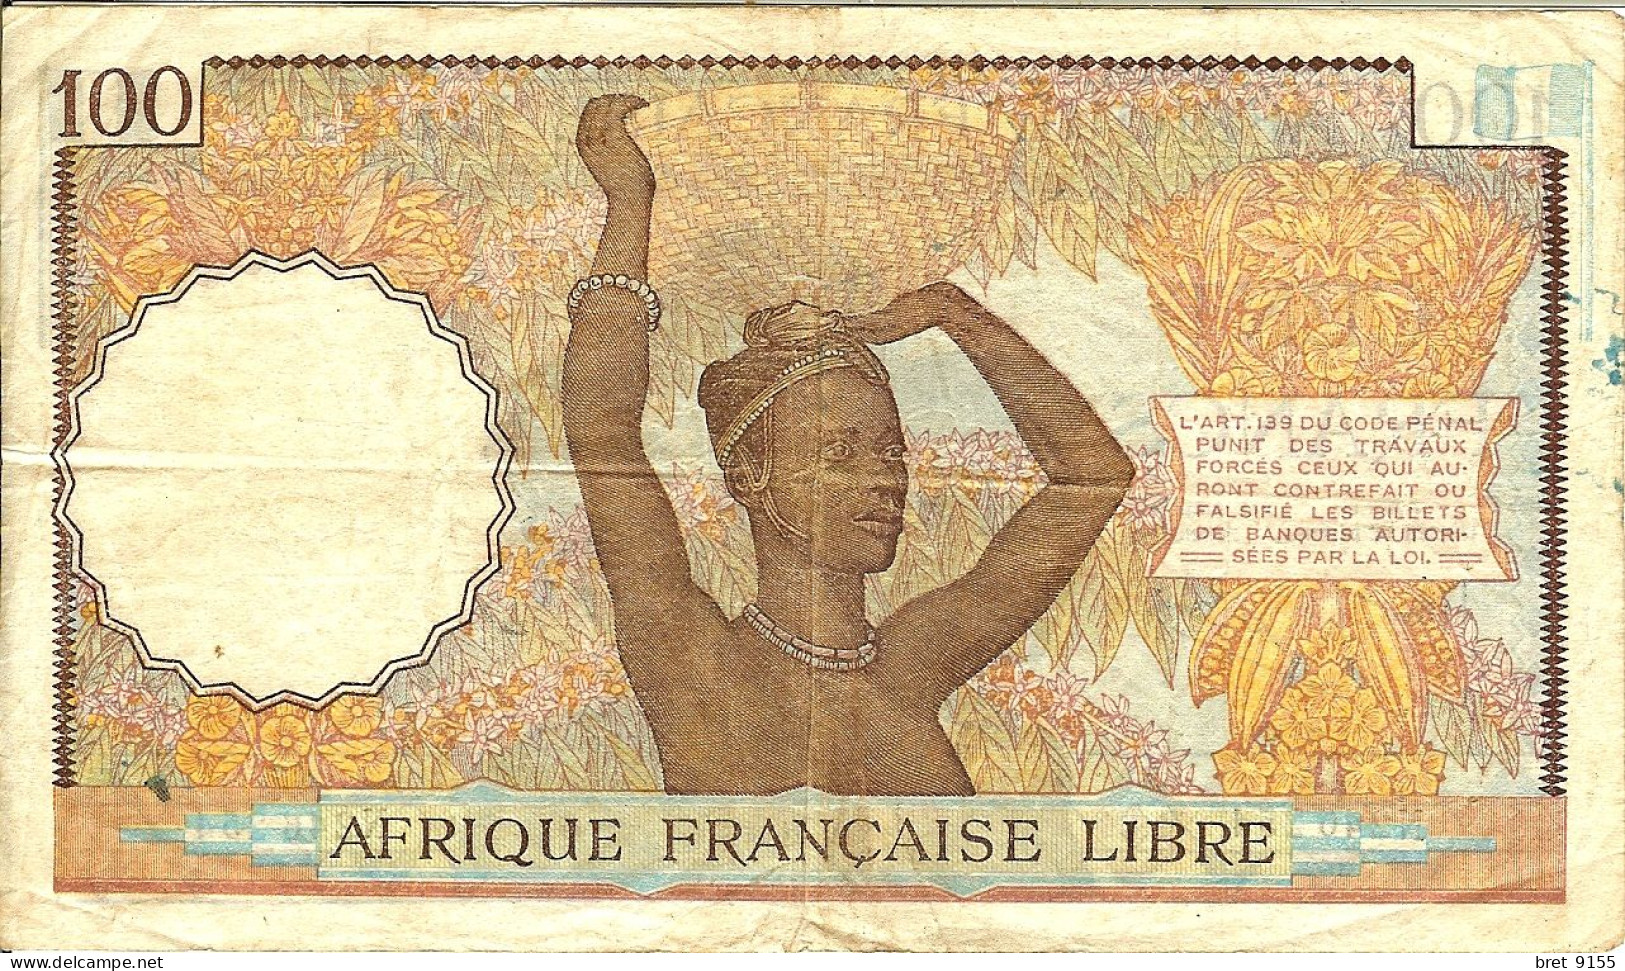 BILLET DE BANQUE AFRIQUE FRANCAISE LIBRE CONGO 100 FRANCS 1941 SERIE N246254 - South Africa